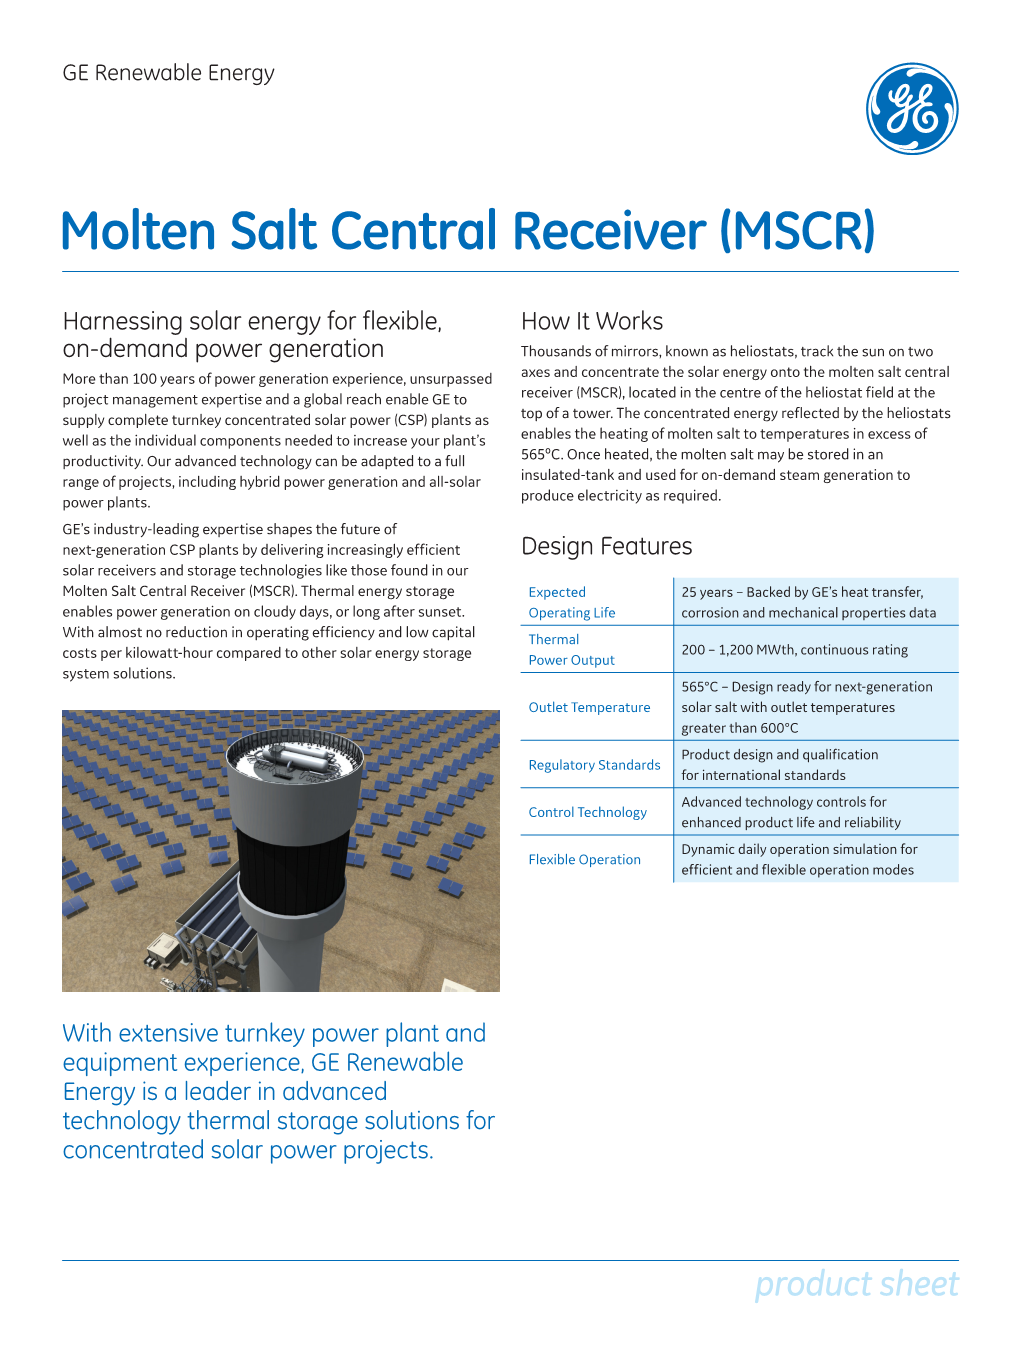 Molten Salt Central Receiver (MSCR)